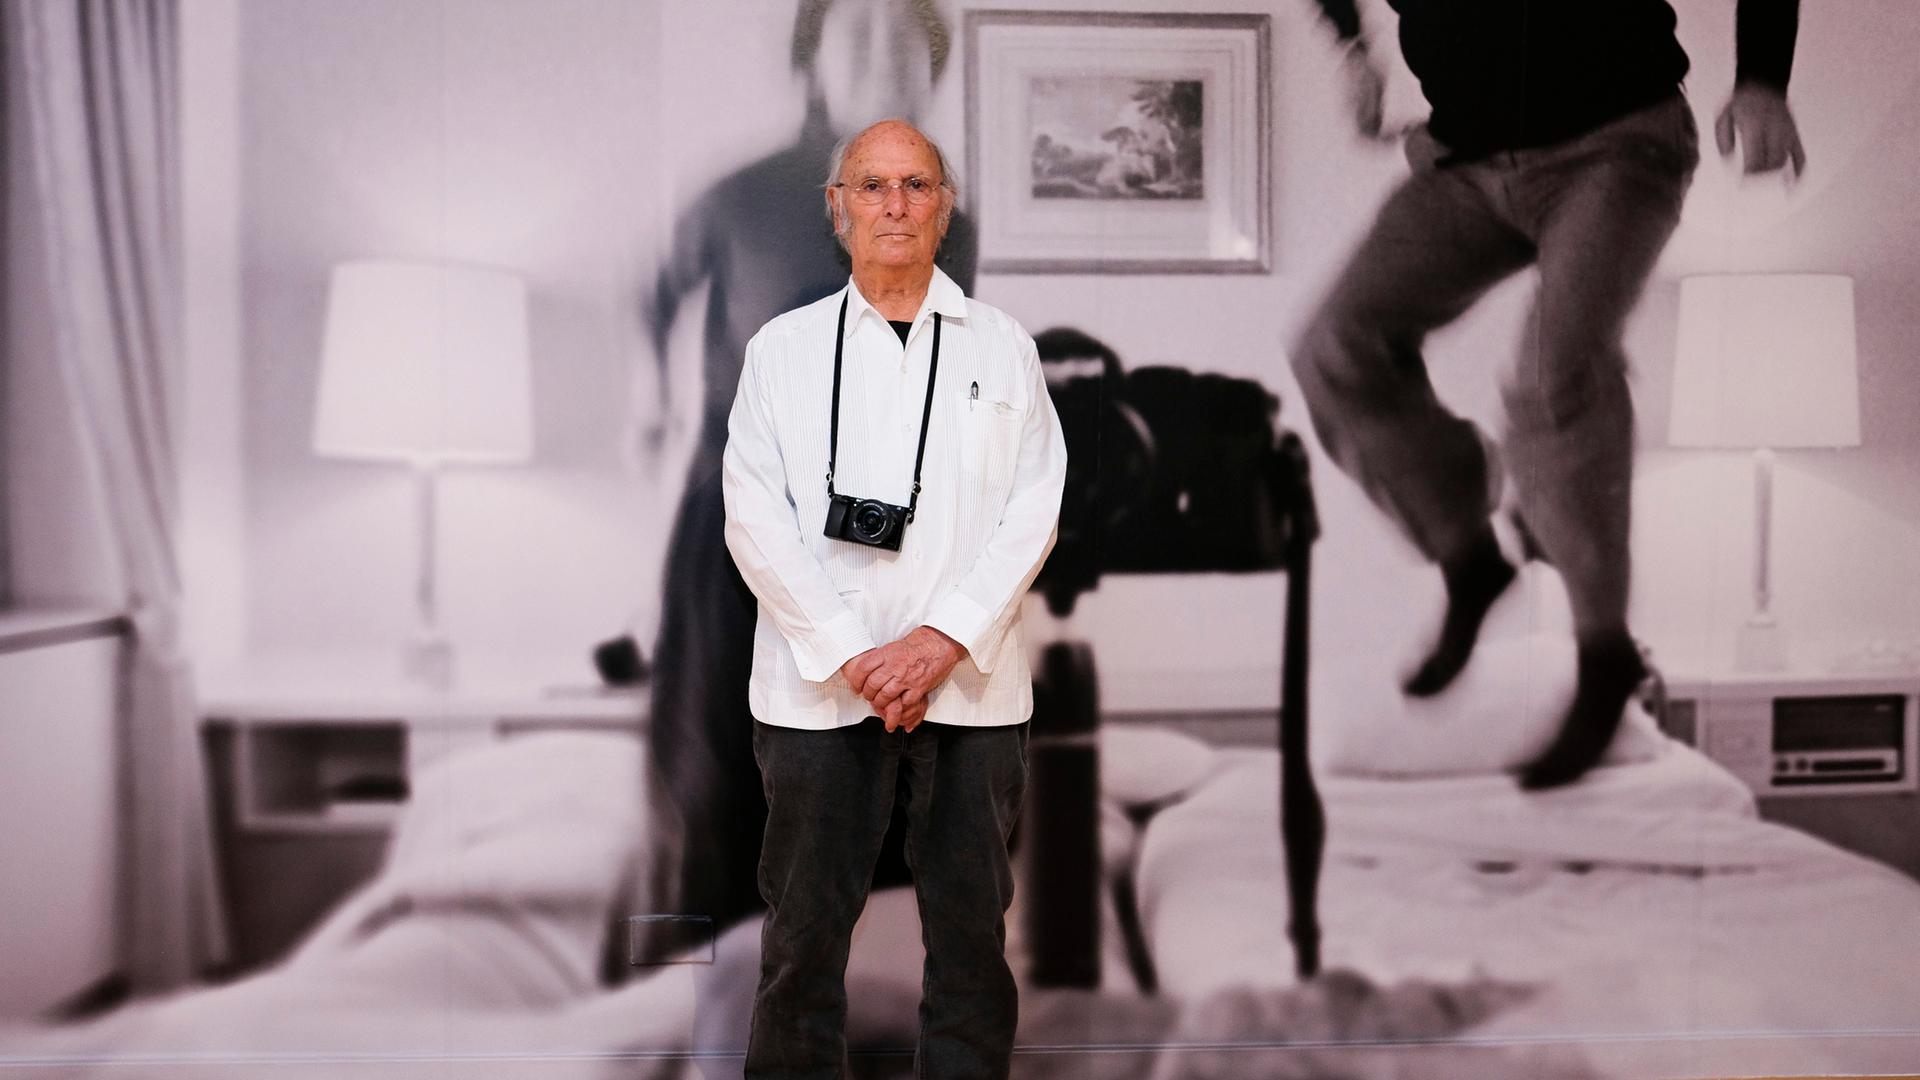 Carlos Saura steht vor einer riesigen Schwarz-Weiß-Fotografie, er trägt eine Kamera um den Hals.